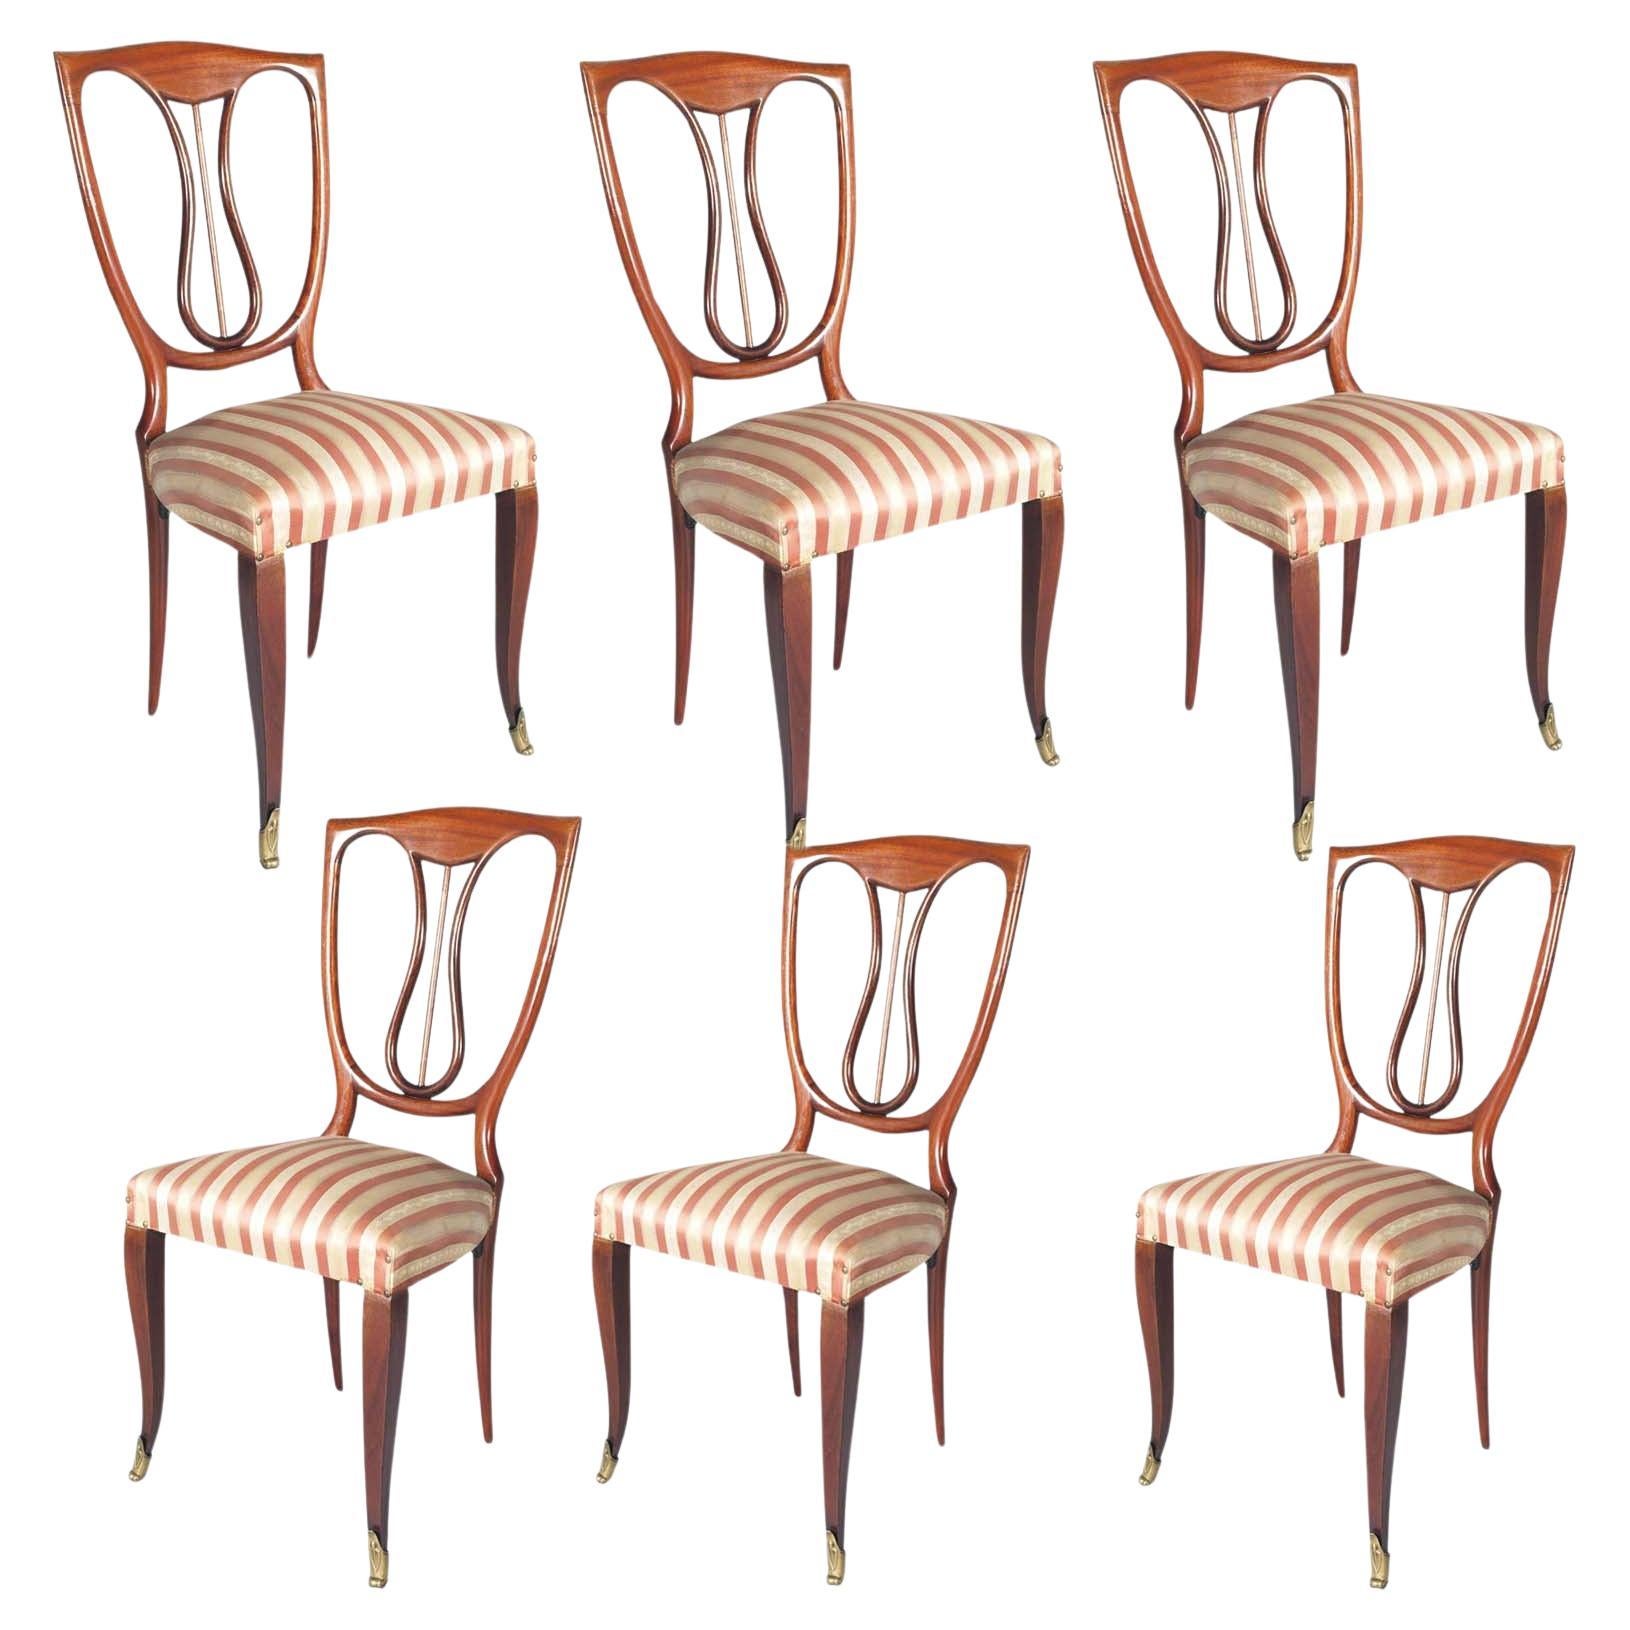 Sechs Stühle aus Mahagoni aus den 1940er Jahren, Melchiorre Bega zugeschrieben, von Galleria Mobili Arte